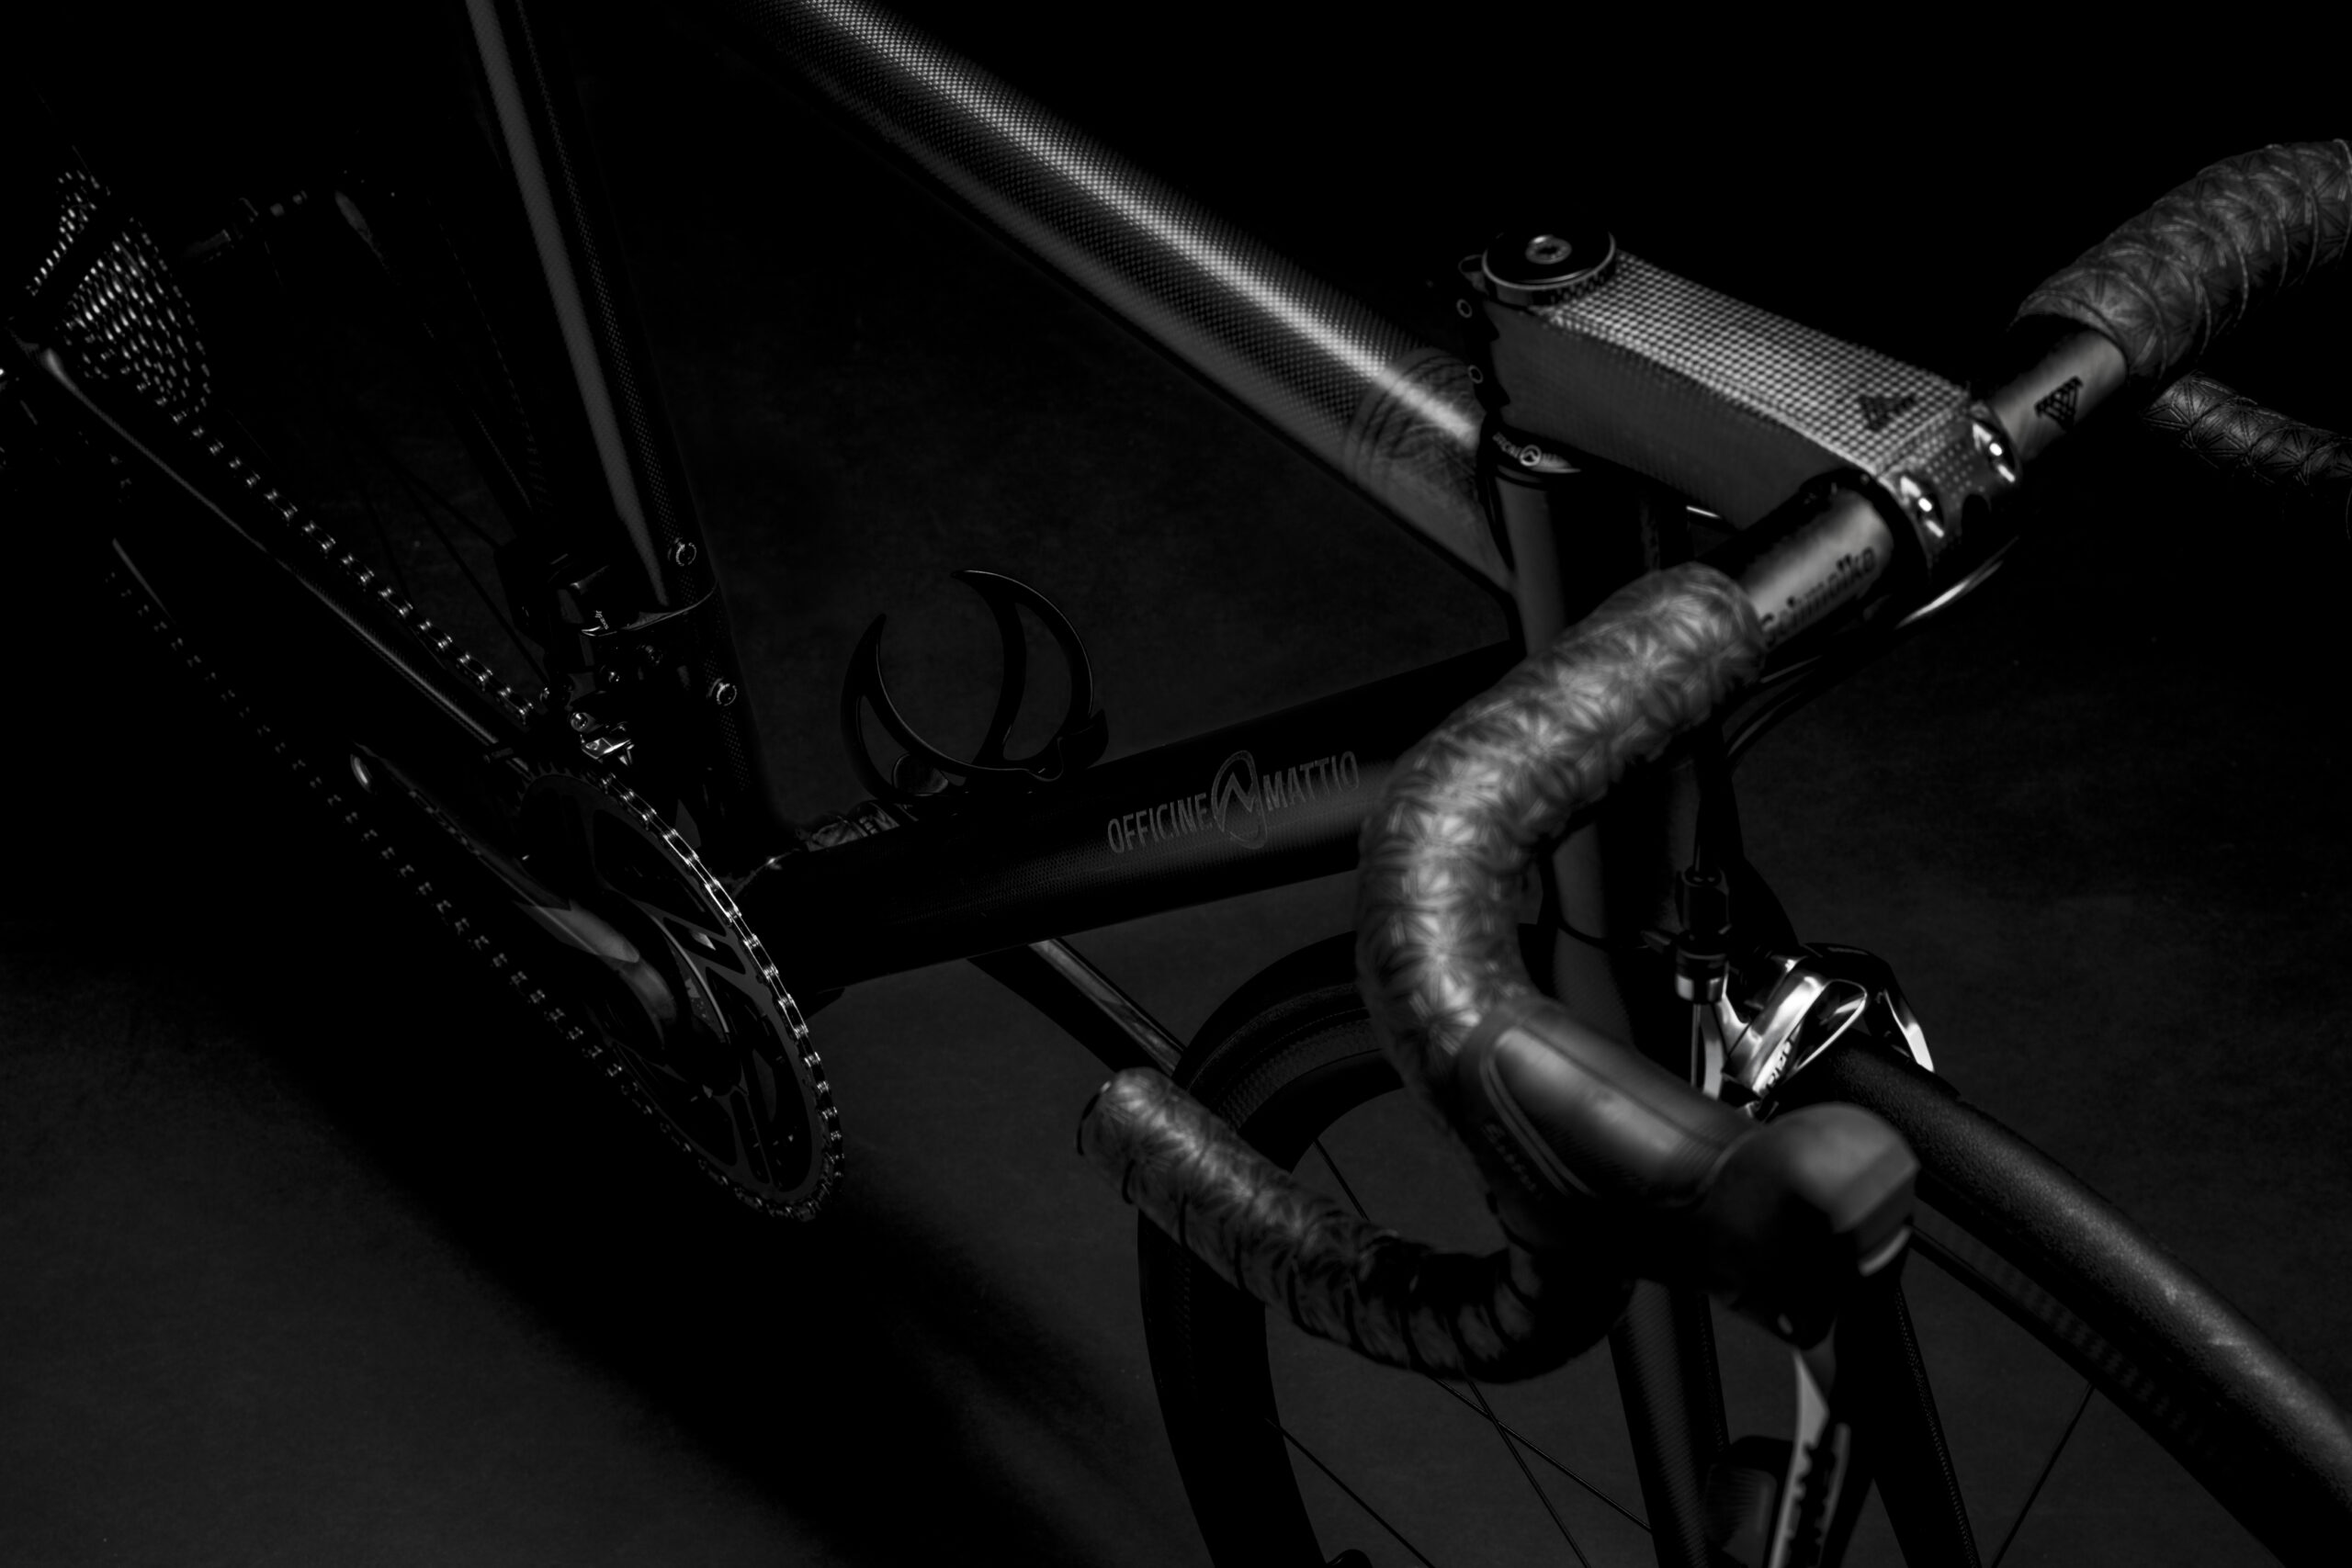 Bicicletta Officine Mattio modello SL, produzione made in italy fotografia dettaglio manubrio e telaio fibra di carbonio